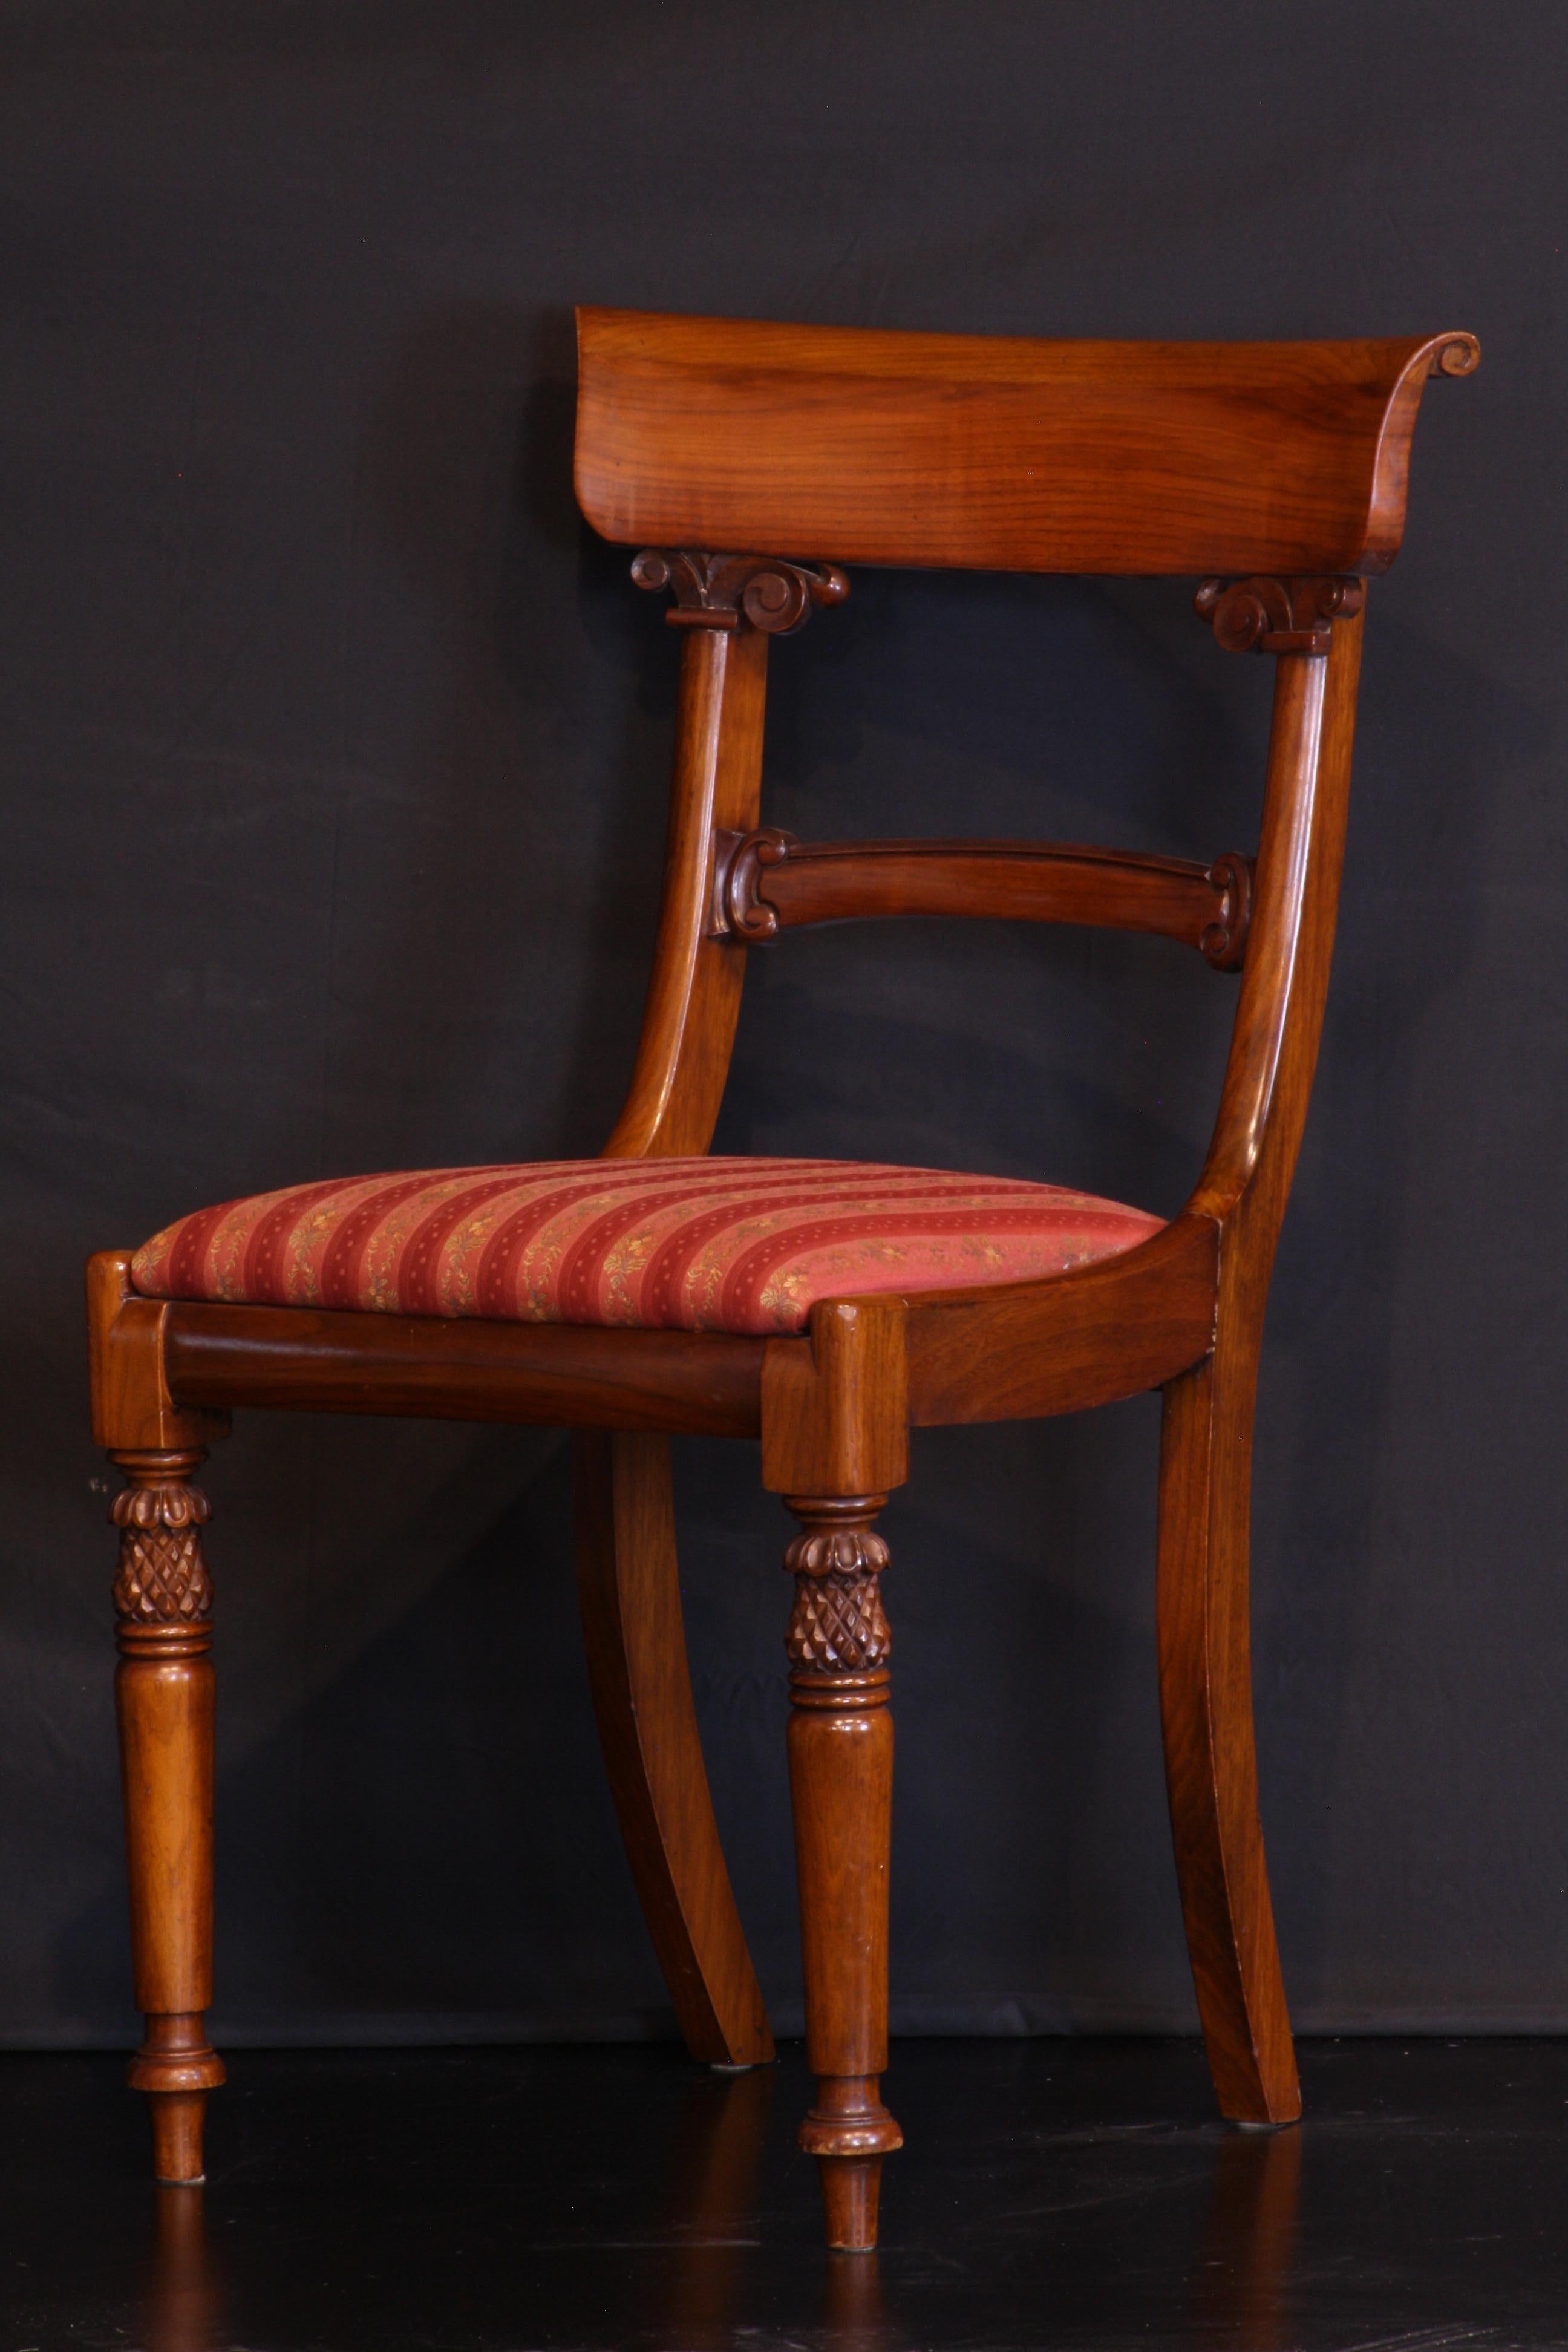 Chaises de salle à manger en noyer 1 bras et 11 chaises latérales style 19ème siècle réalisées par Lionel Rawlinson 
les sièges se détachent pour que la garniture puisse être facilement changée. Chaises solides et robustes.